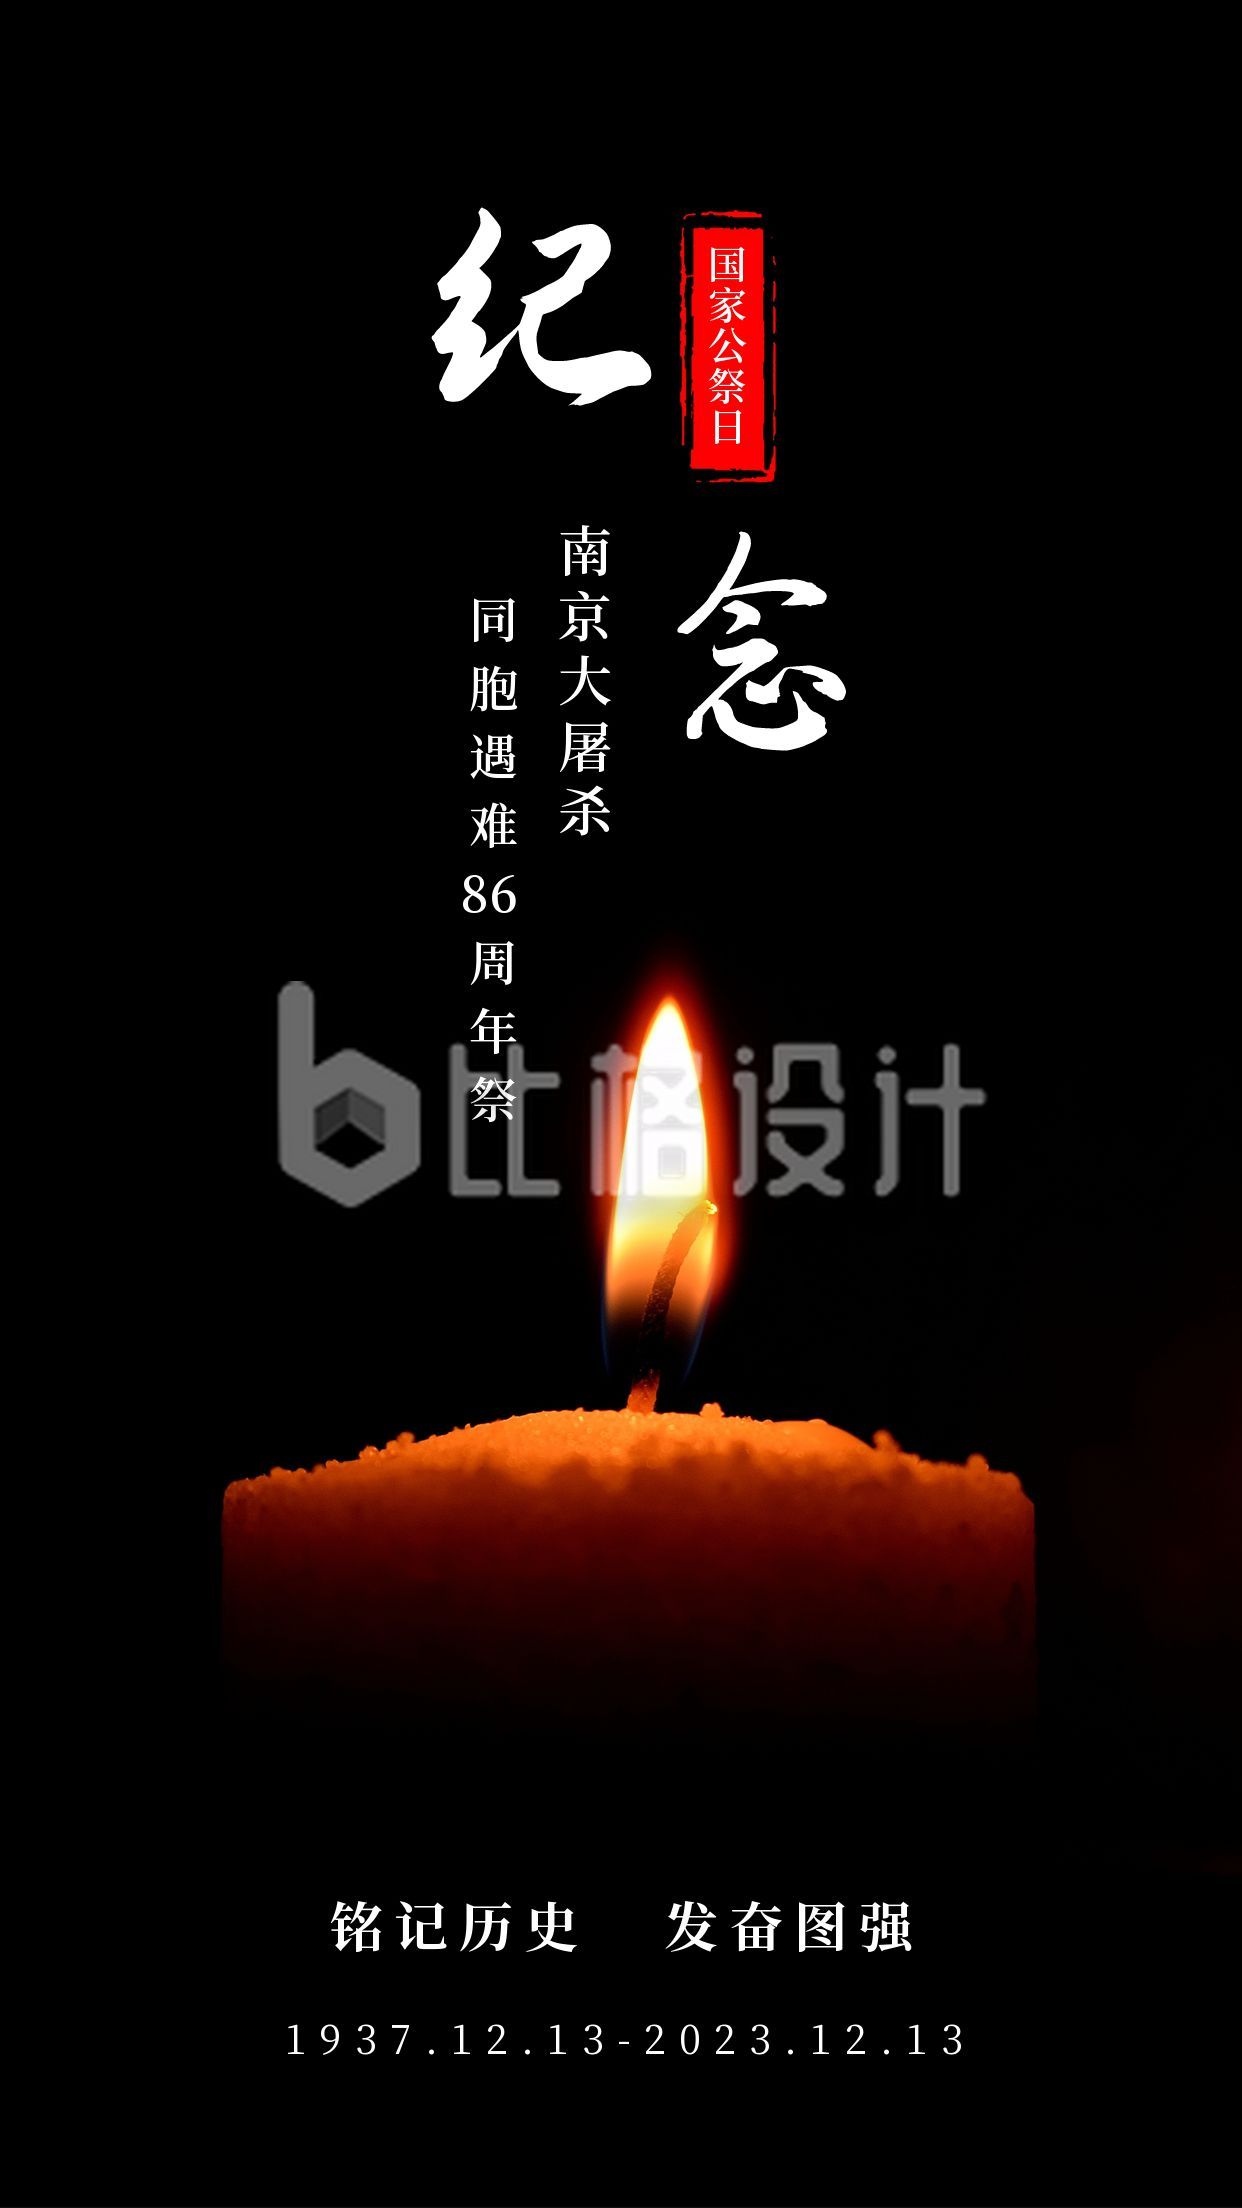 12.13国家公祭日南京大屠杀纪念日哀悼手机海报